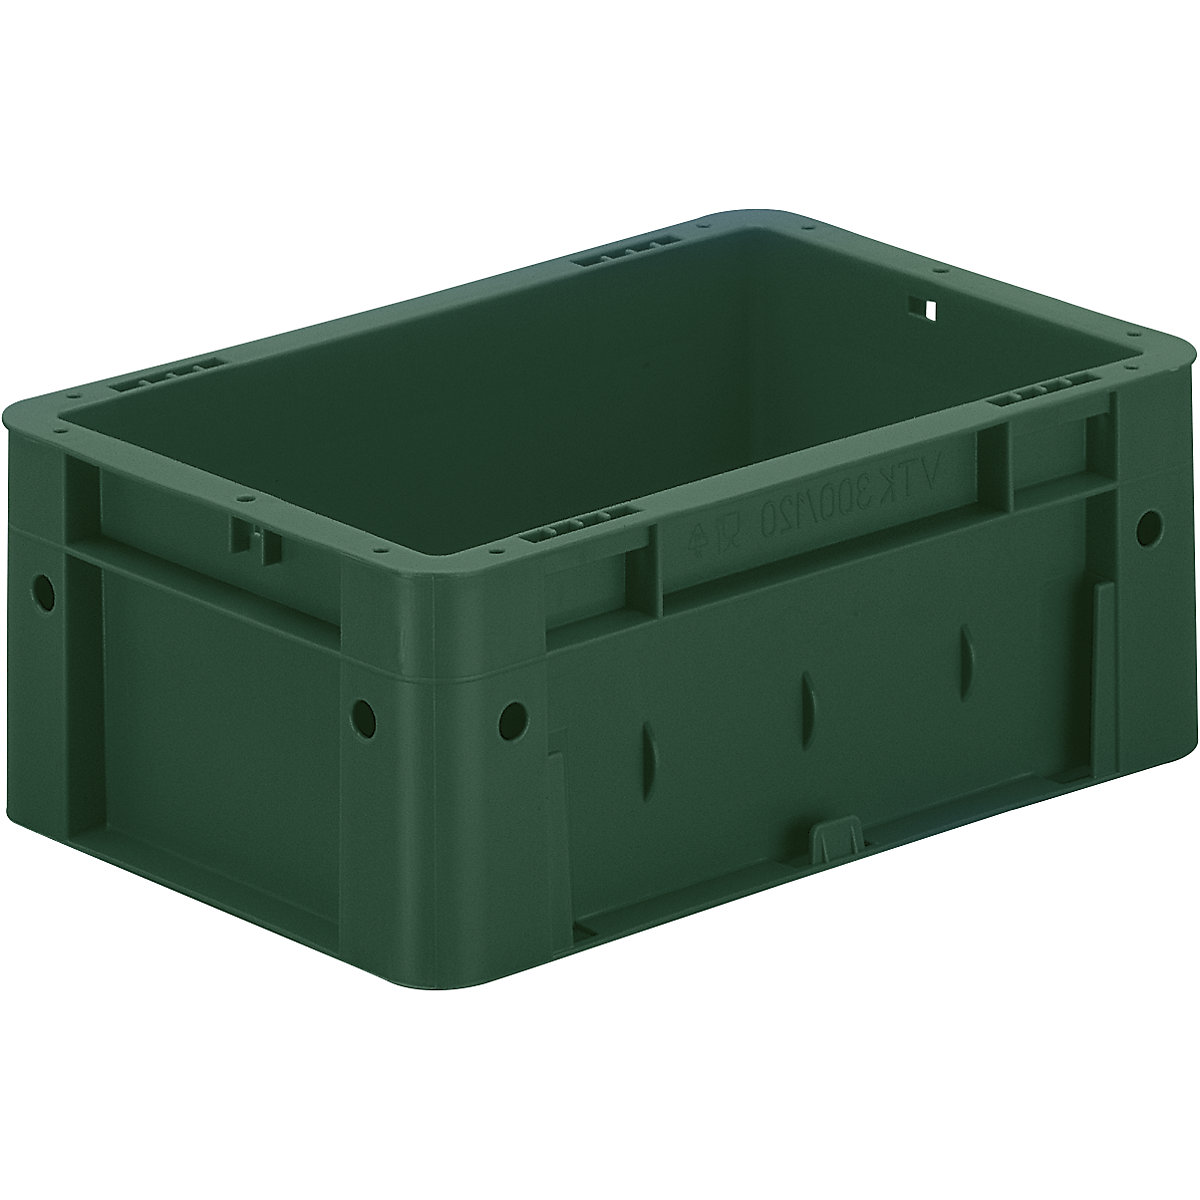 Schwerlast-Euro-Behälter, Polypropylen, Volumen 4,1 l, LxBxH 300 x 200 x 120 mm, Wände geschlossen, Boden geschlossen, grün, VE 8 Stk-4